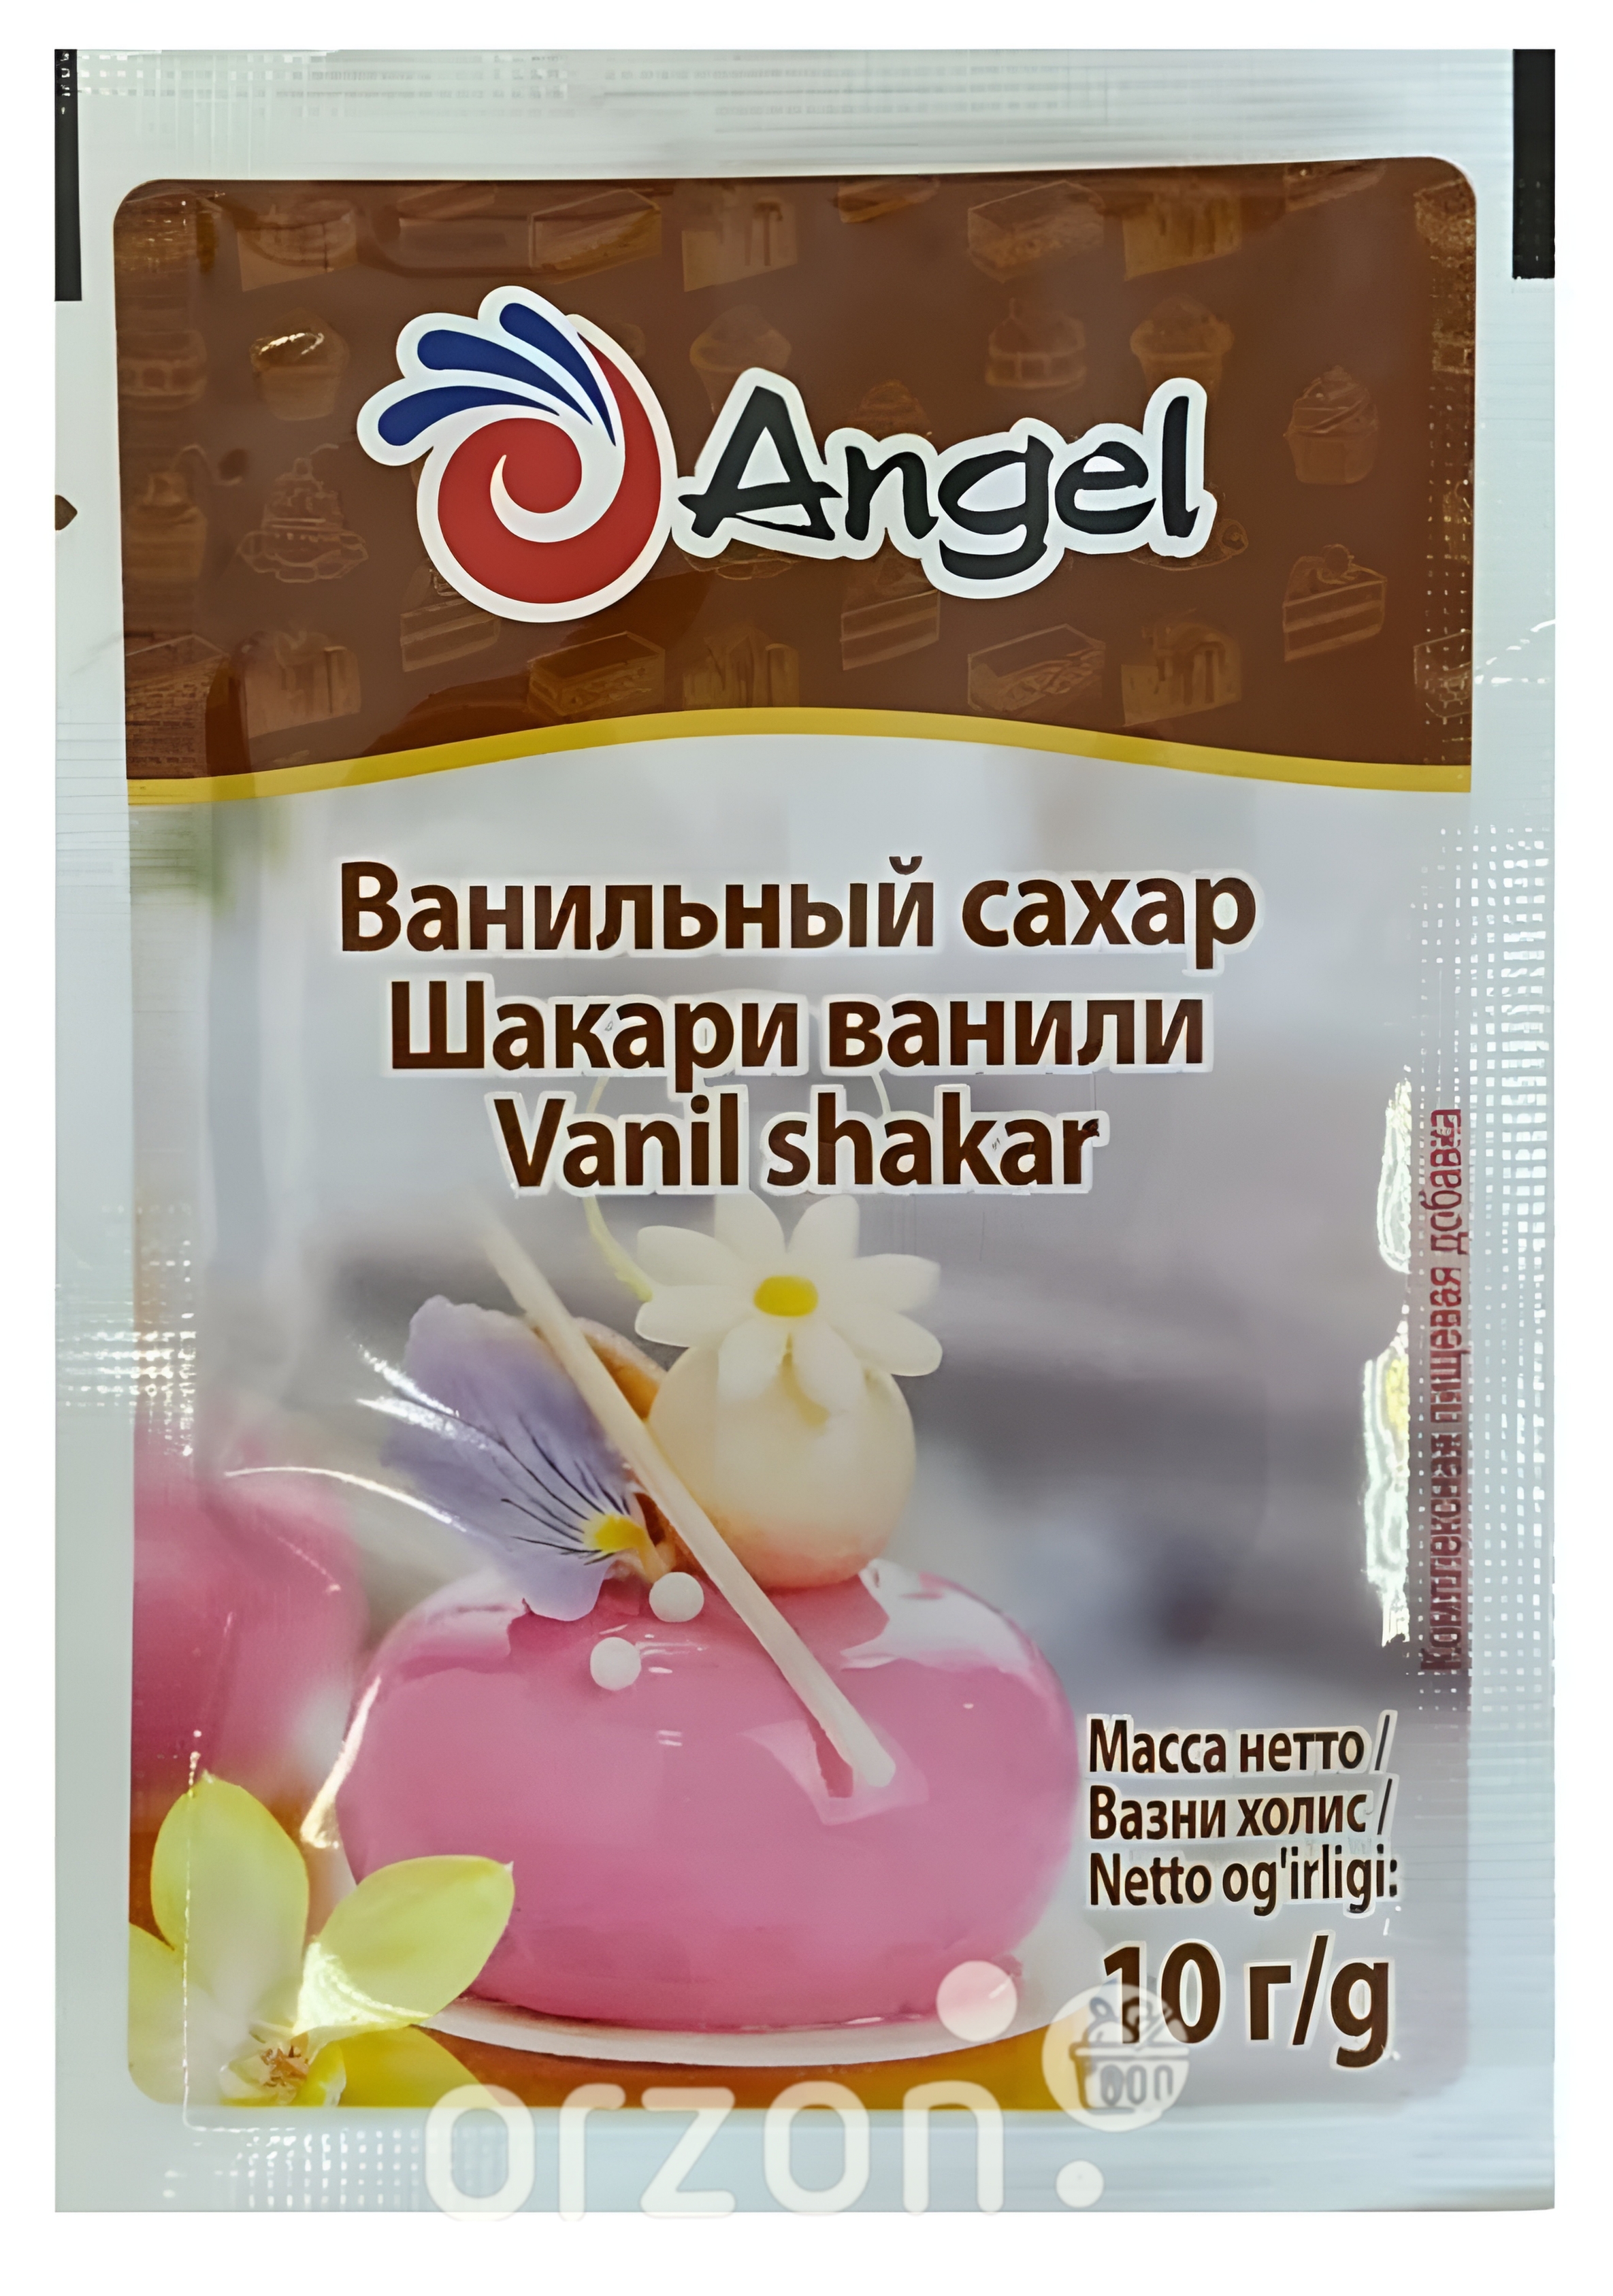 Сахар Ванильный "Angel" 10 гр